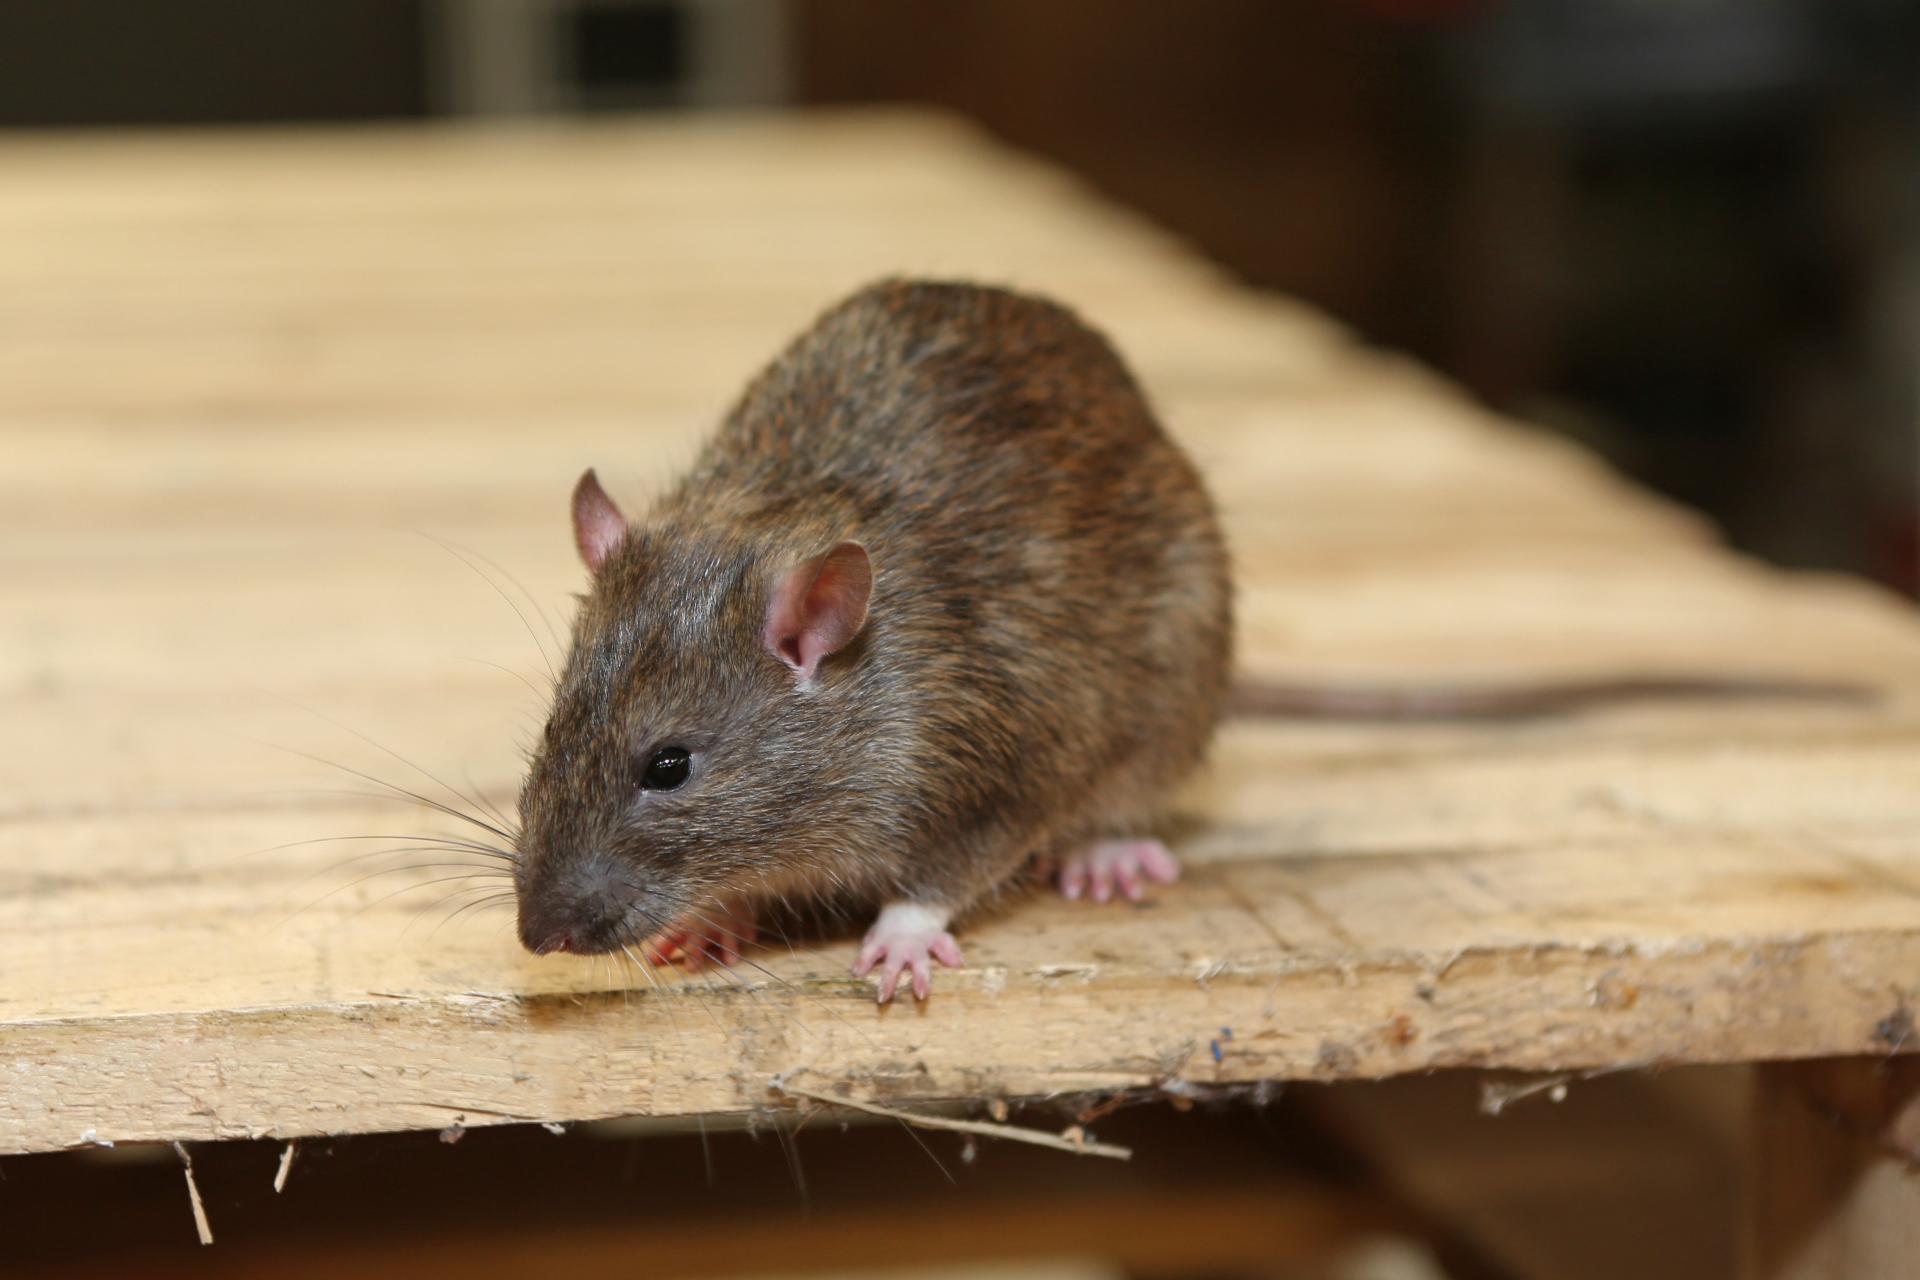 Rat extermination, Pest Control in Clapham, SW4. Call Now 020 8166 9746